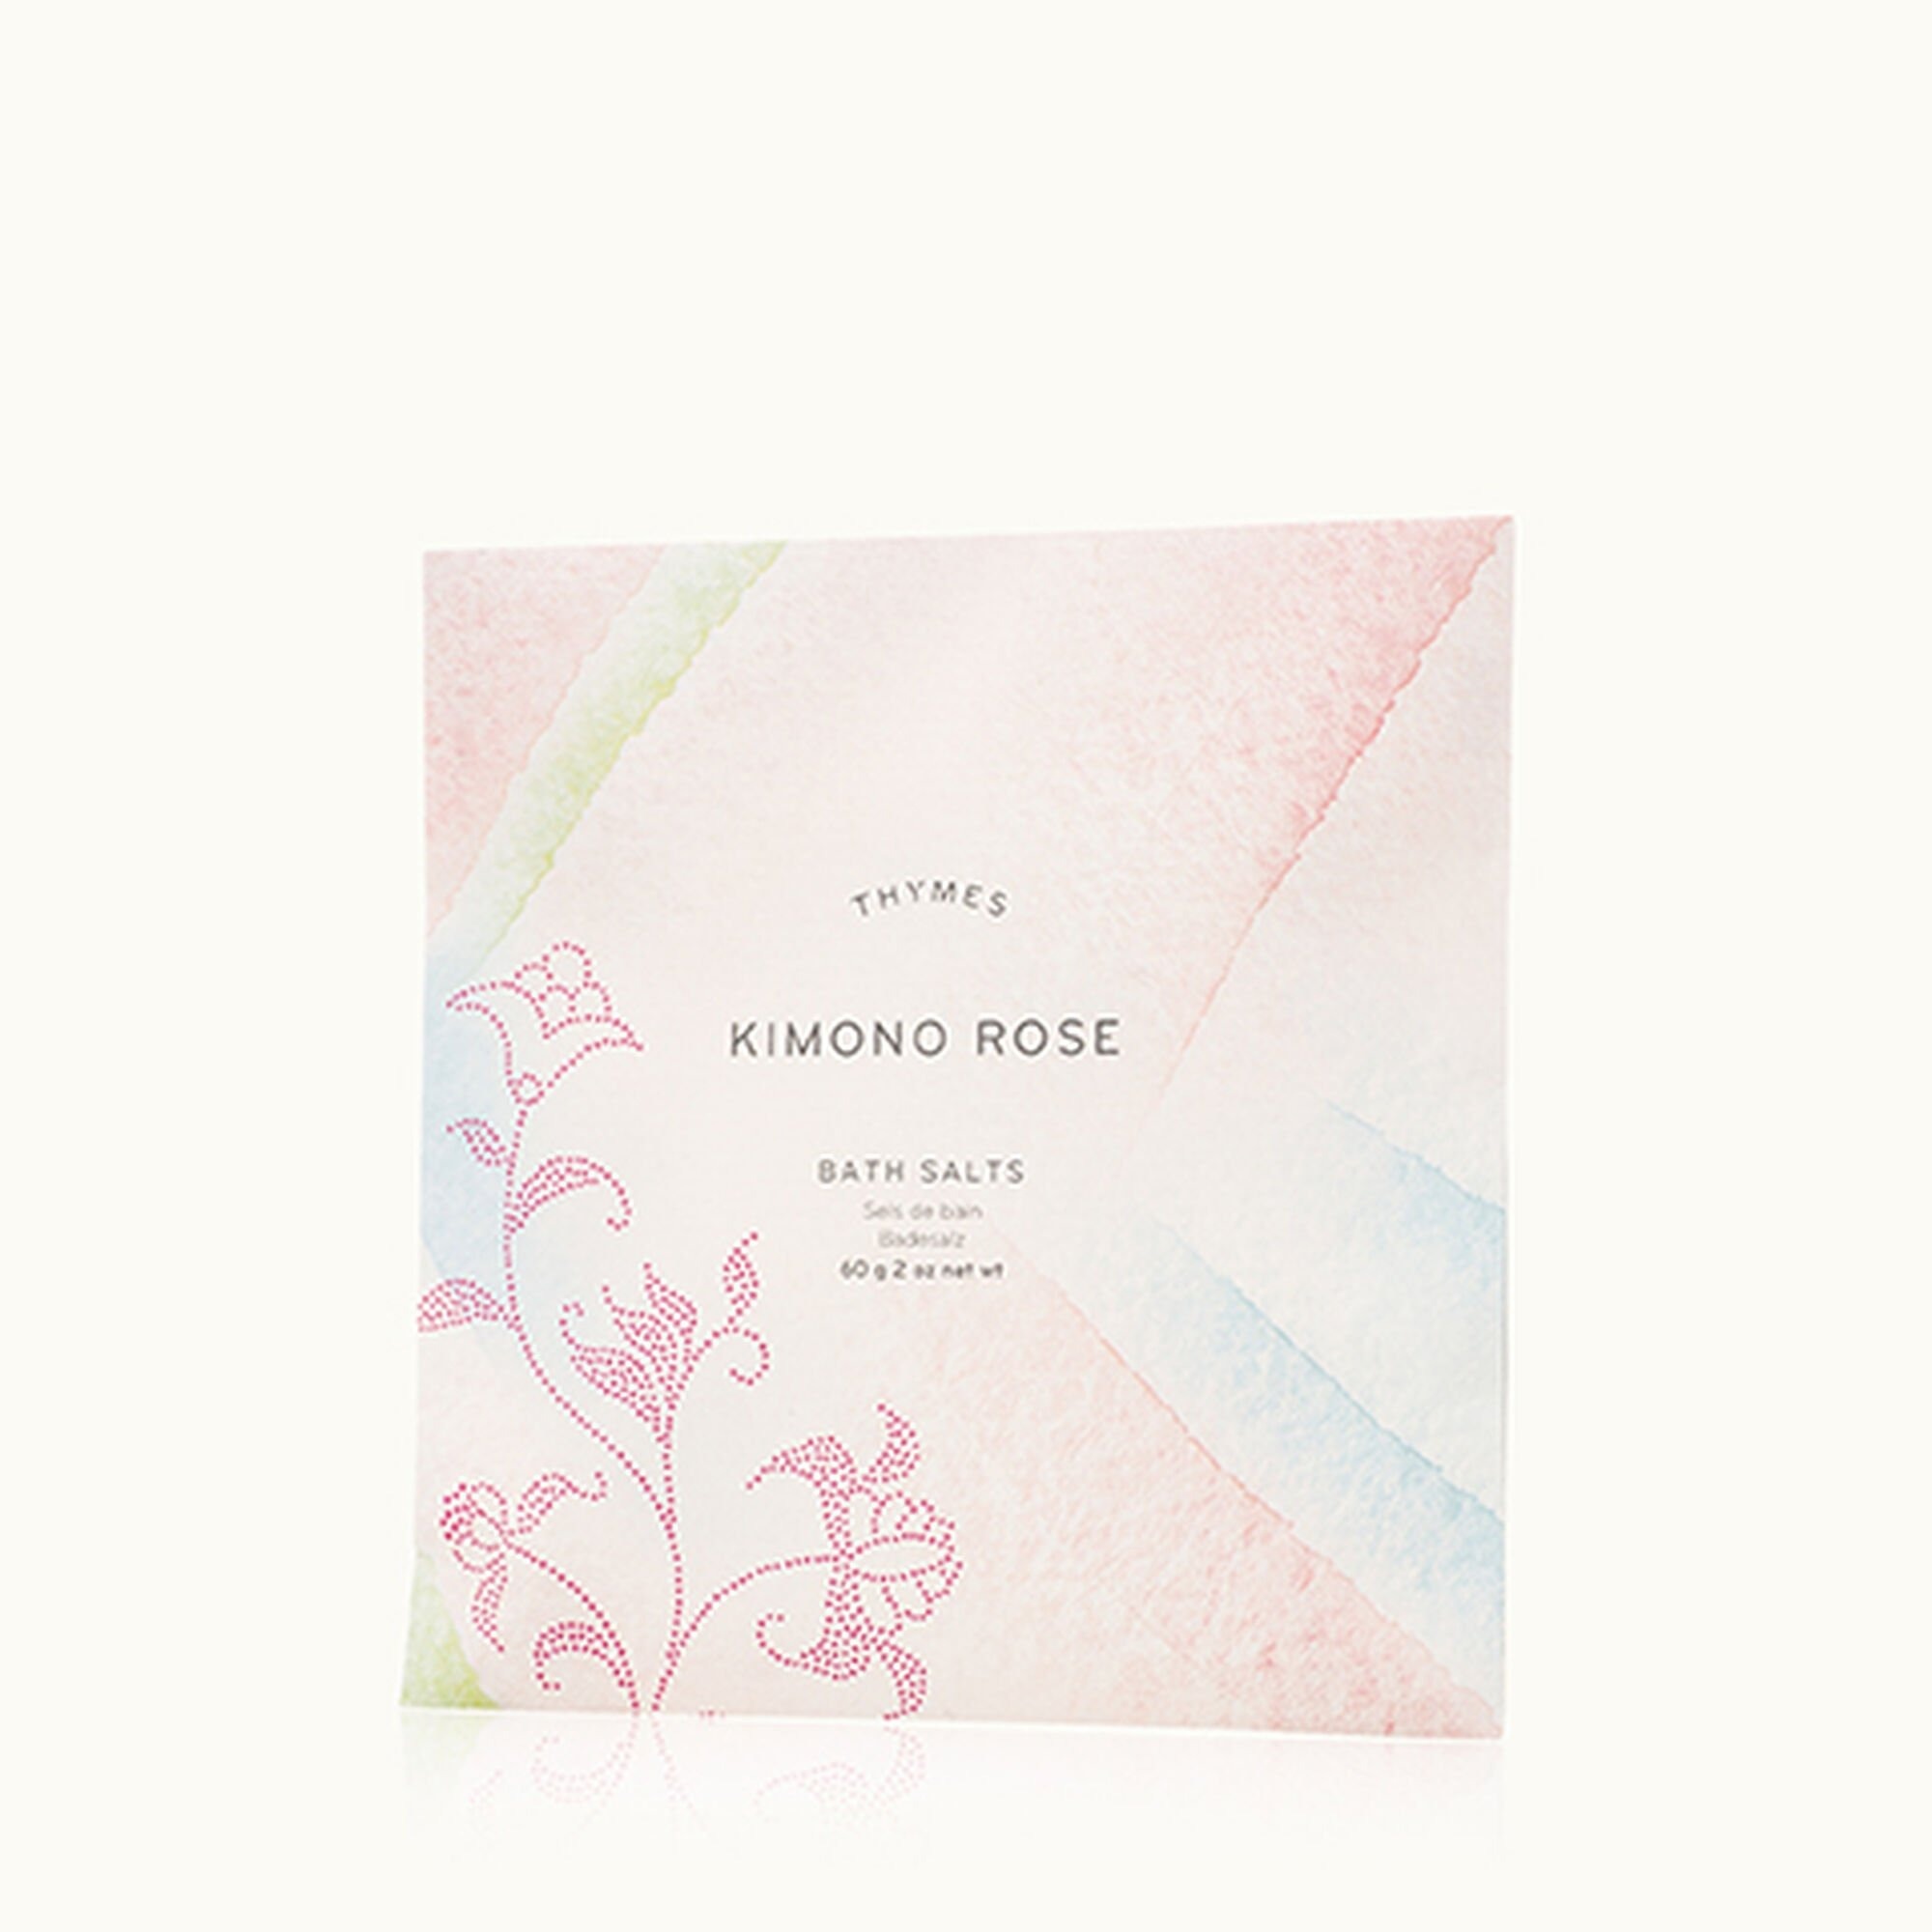 Kimono Rose Bath Salts Envelope-1